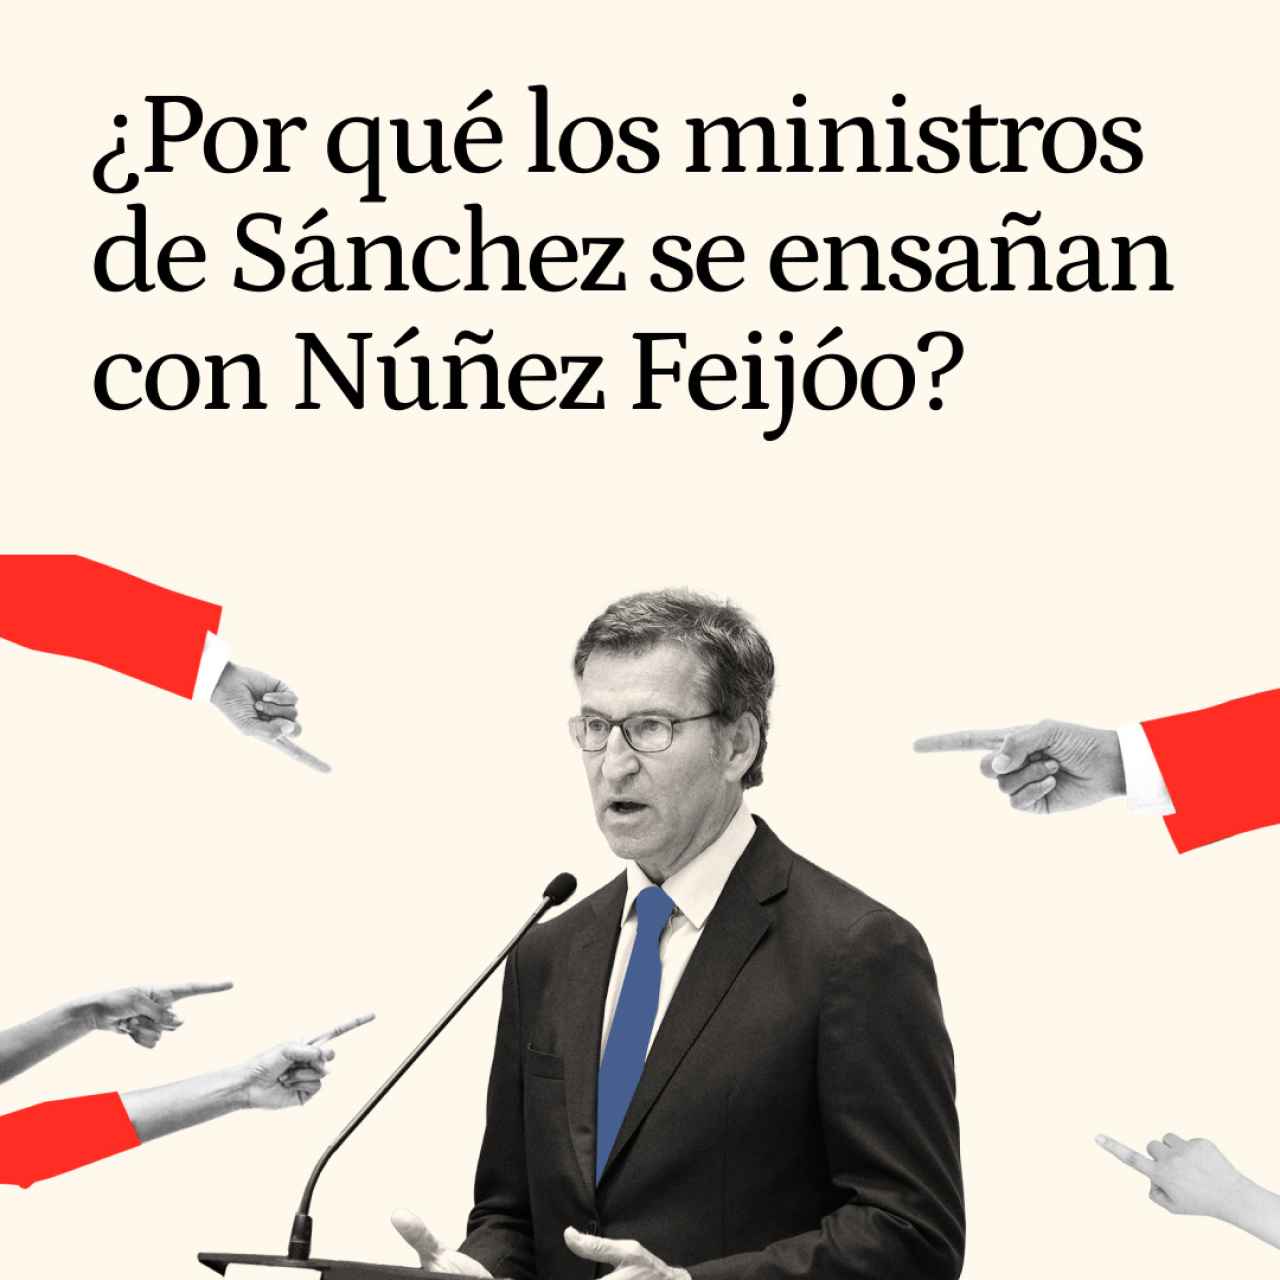 Los ministros de Sánchez, en tromba contra Feijóo con la consigna de frenar su auge en las encuestas